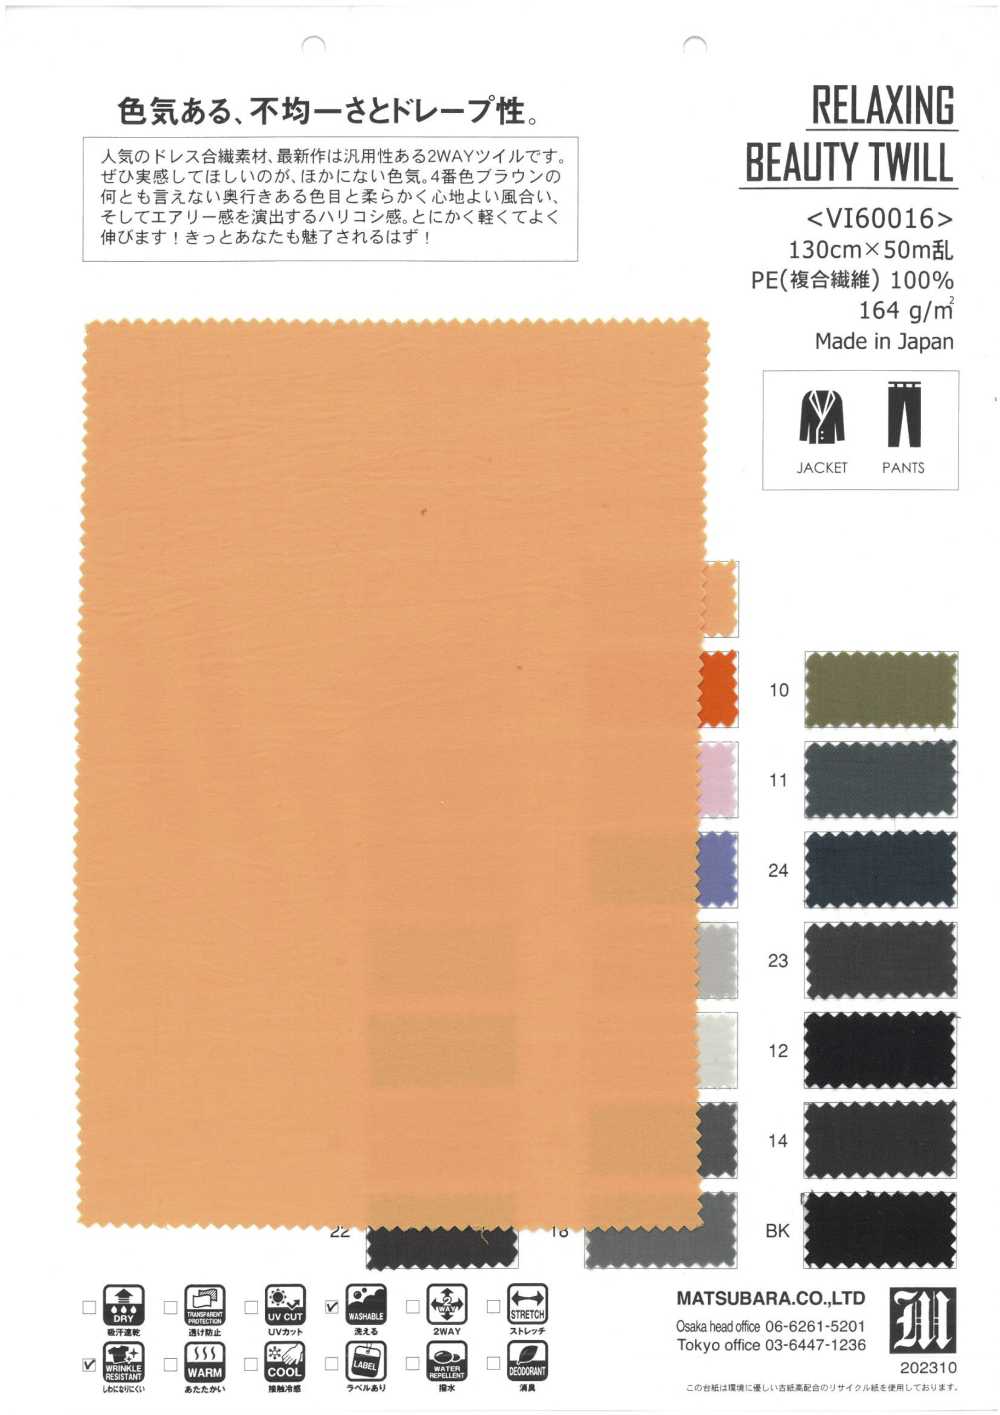 VI60016 TWILL DE BEAUTÉ RELAXANT[Fabrication De Textile] Matsubara